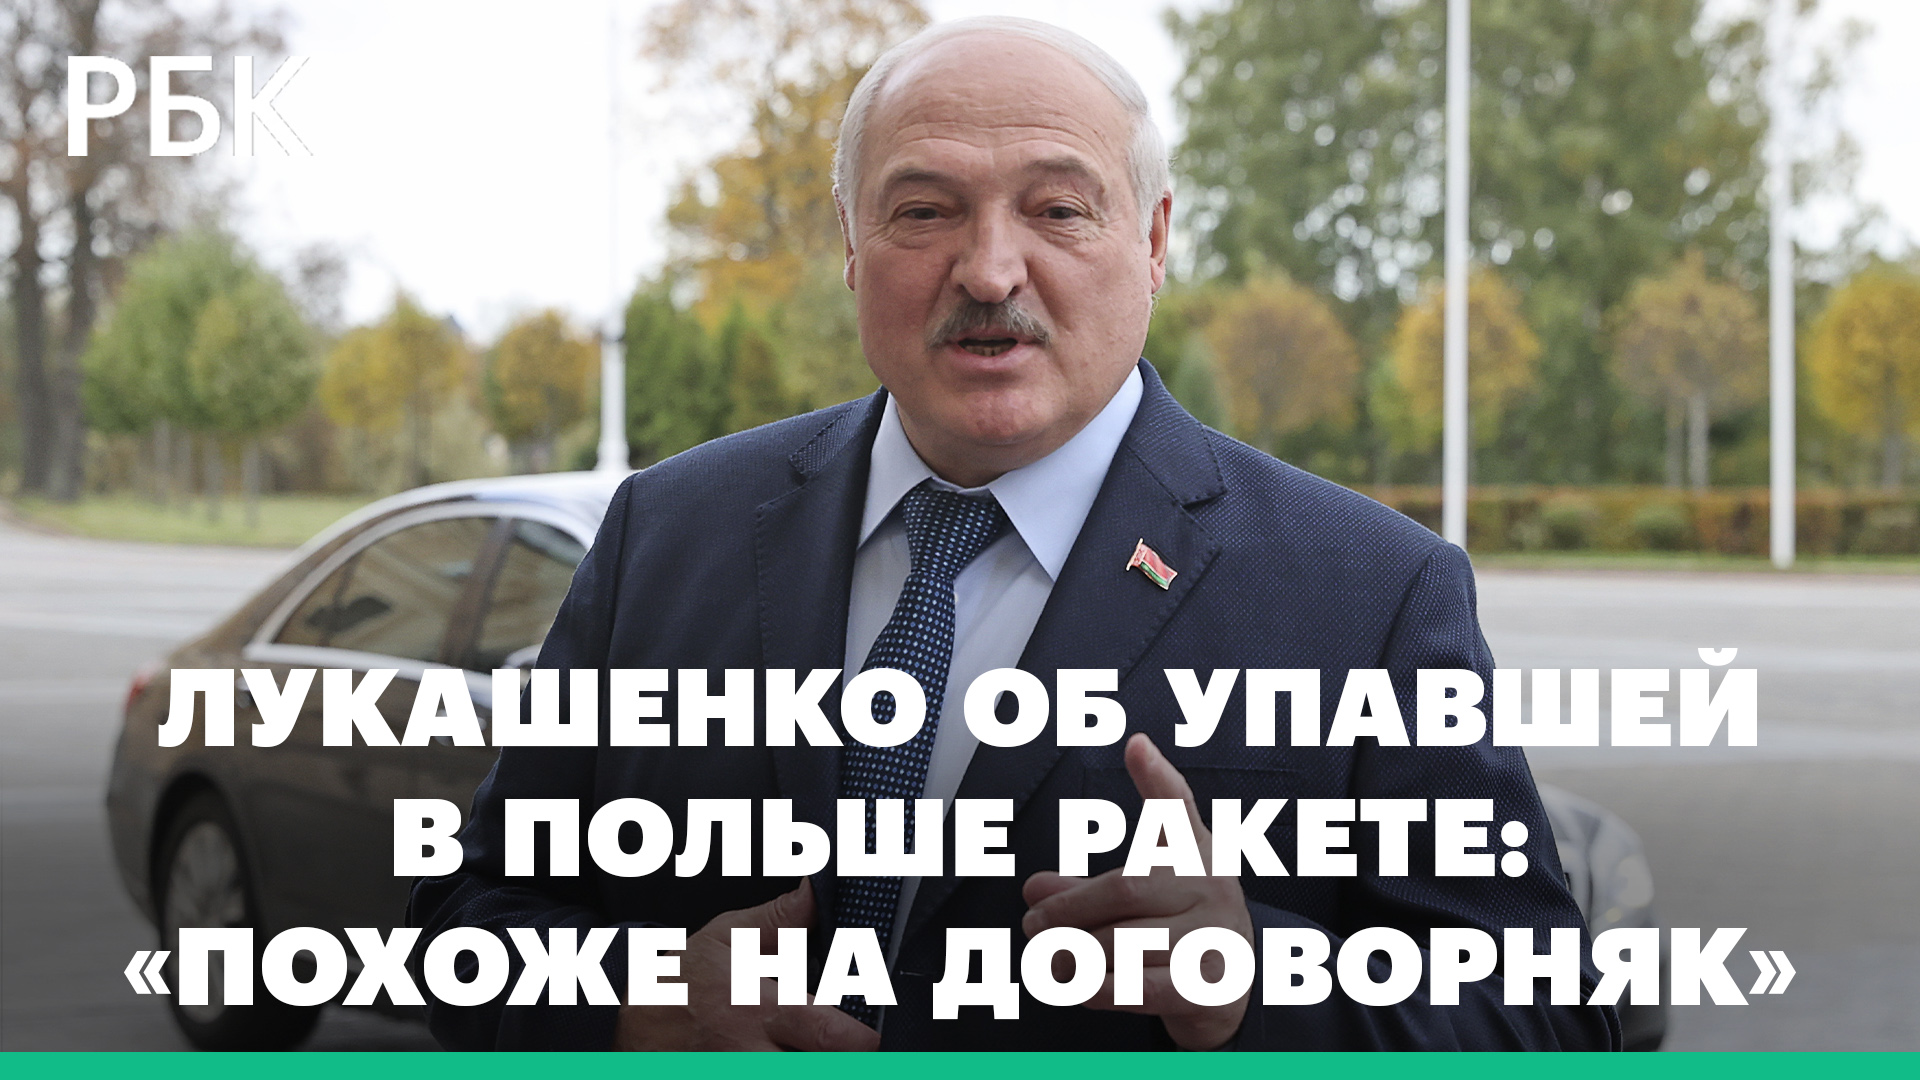 Лукашенко: падение ракеты в Польше понадобилось, чтобы спровоцировать Москву и Минск